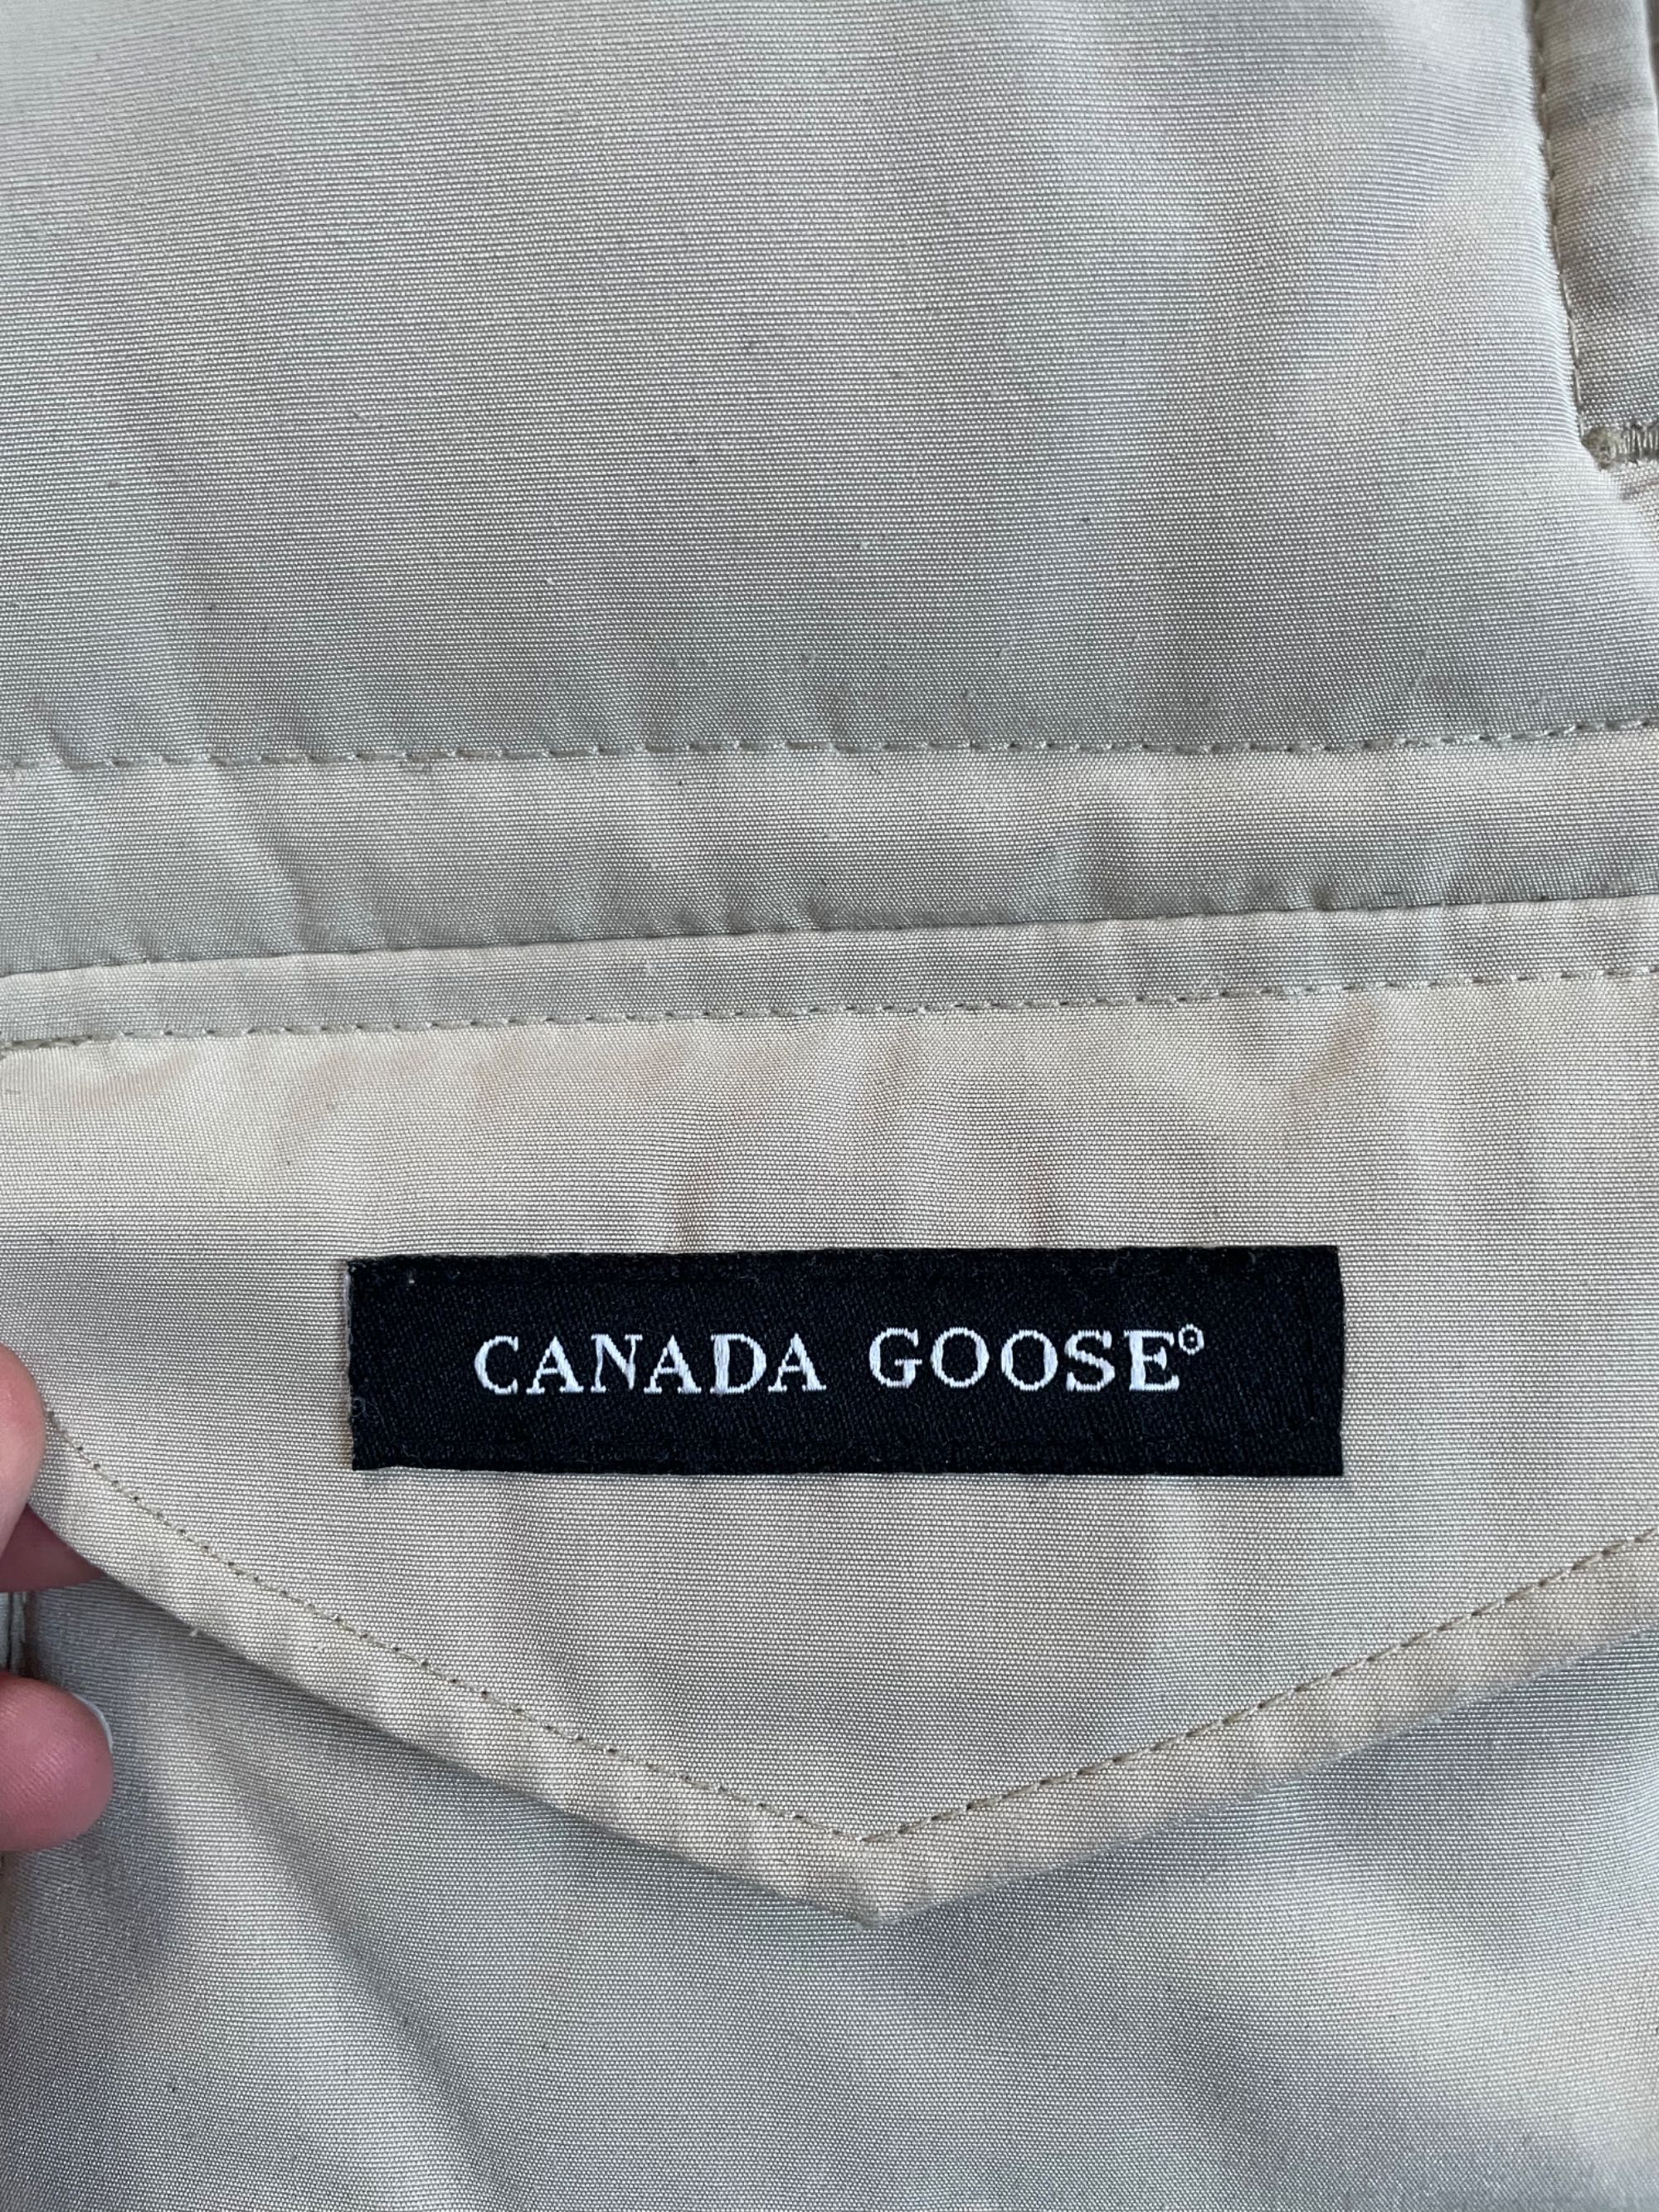 Kurtka płaszcz parka Canada Goose rozmiar S vintage retro